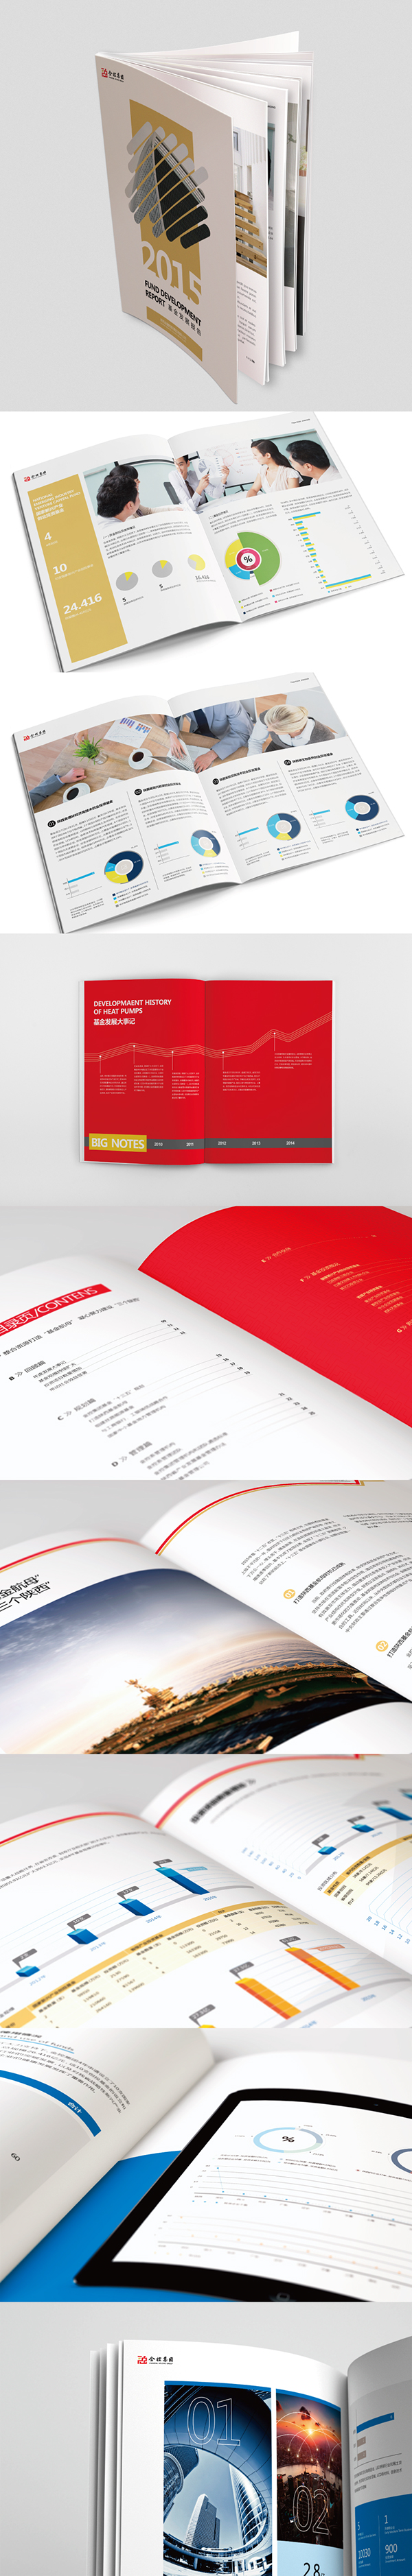 BRAND DESIGN STUDIO—画册设计